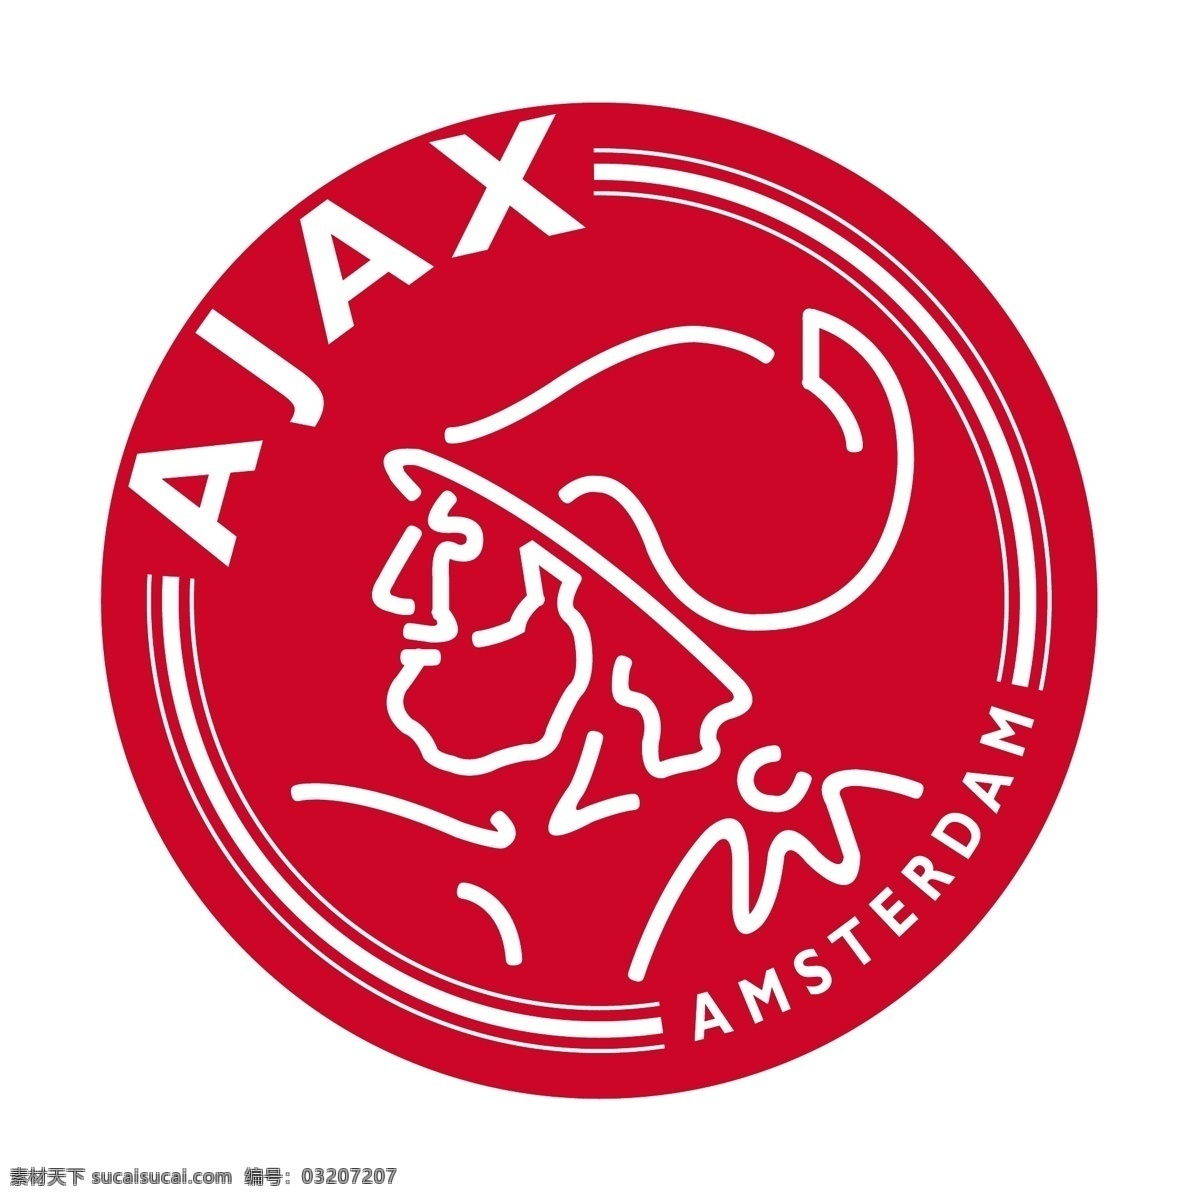 阿贾克斯 阿姆斯特丹 ajax 自由 矢量 免费 艺术 载体 矢量图 建筑家居